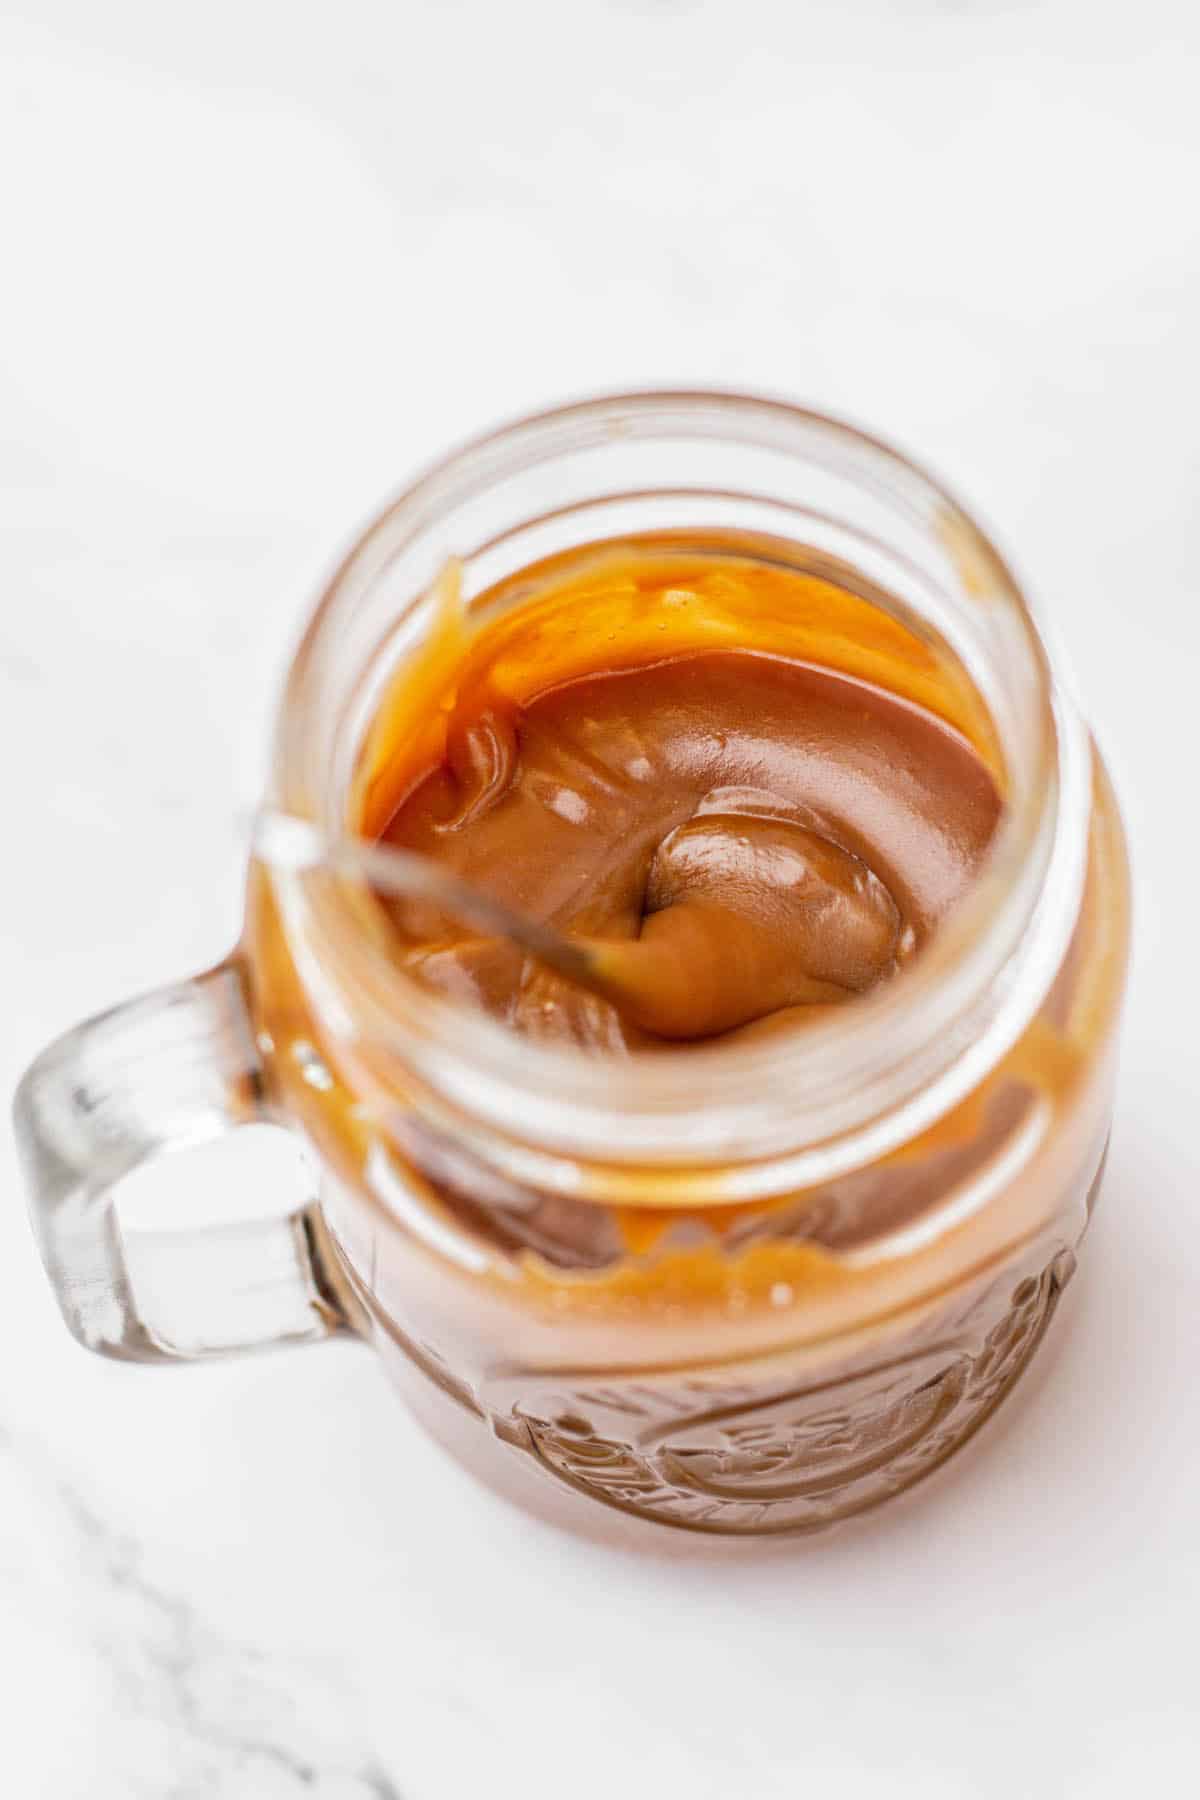 sticky caramel in a jar.